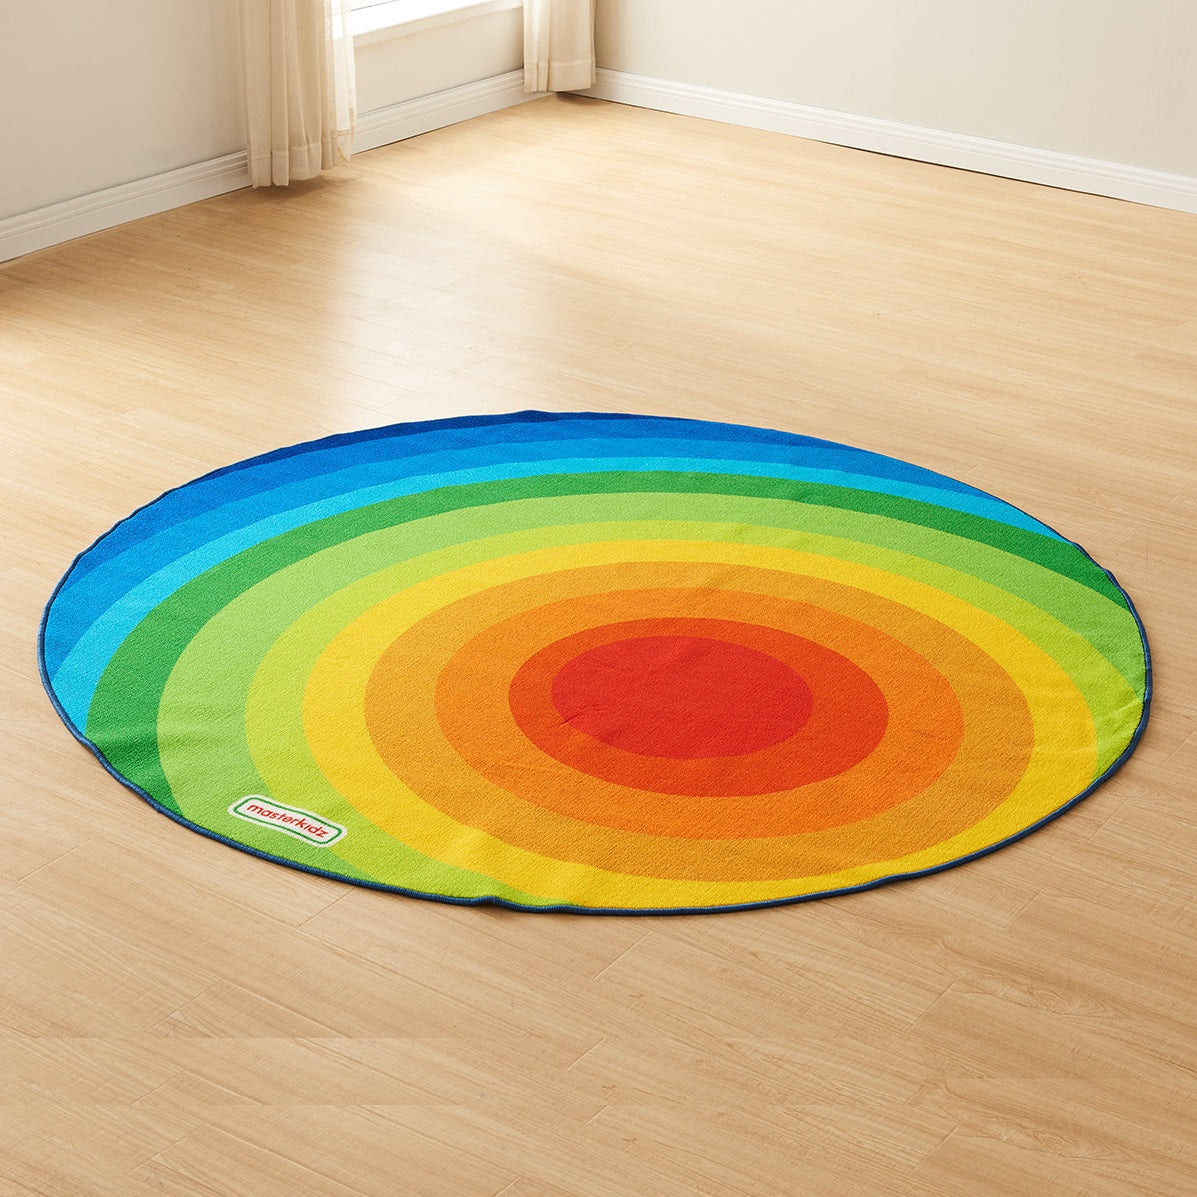 Masterkidz Rainbow Rug Diameter 2m 彩虹圓形地毯 直徑2米